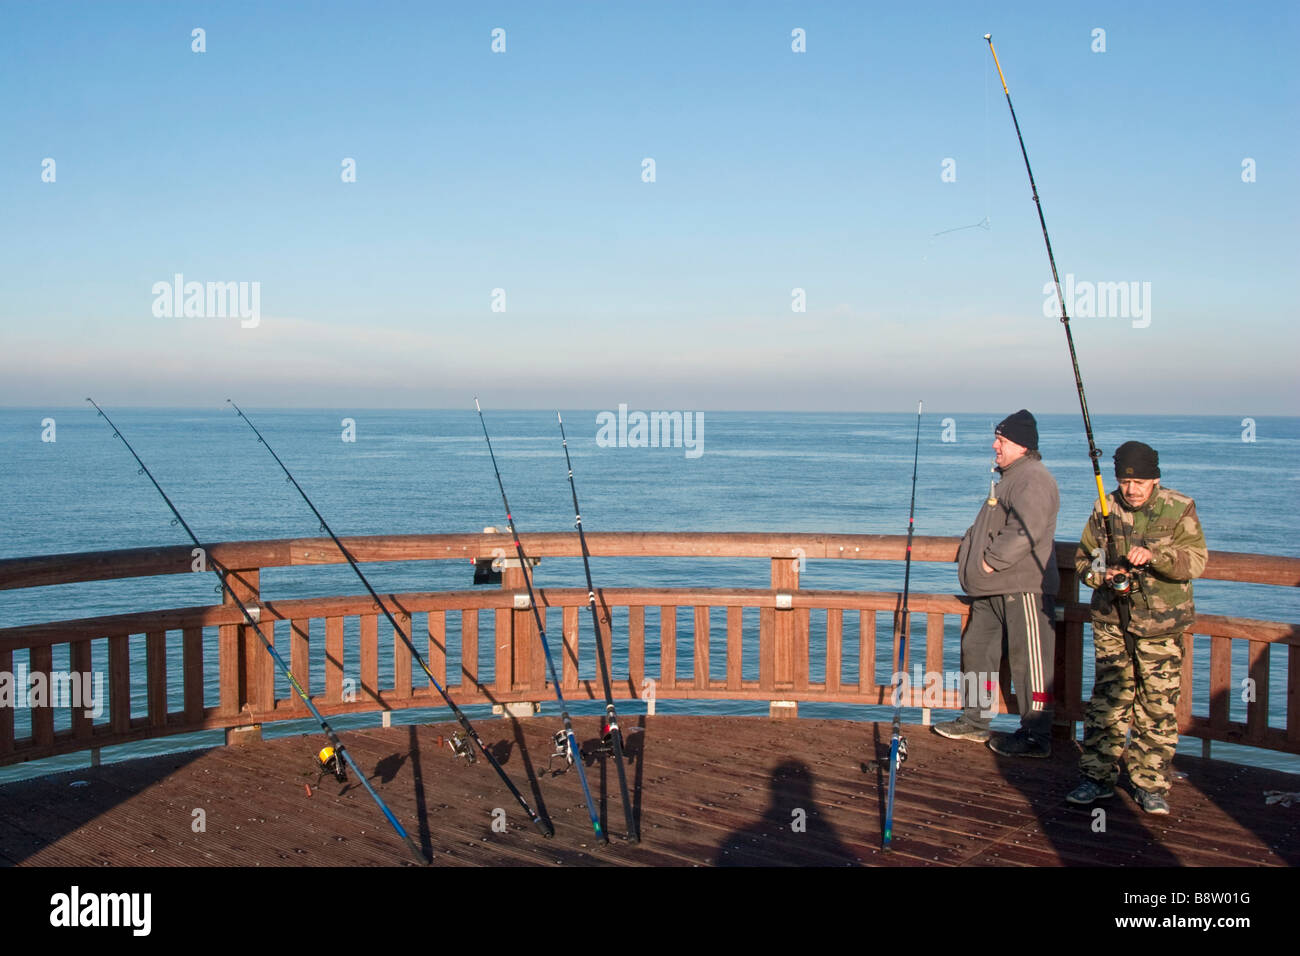 La pesca sportiva in mare, Pas-de-Calais, Calais, Francia. Foto Stock